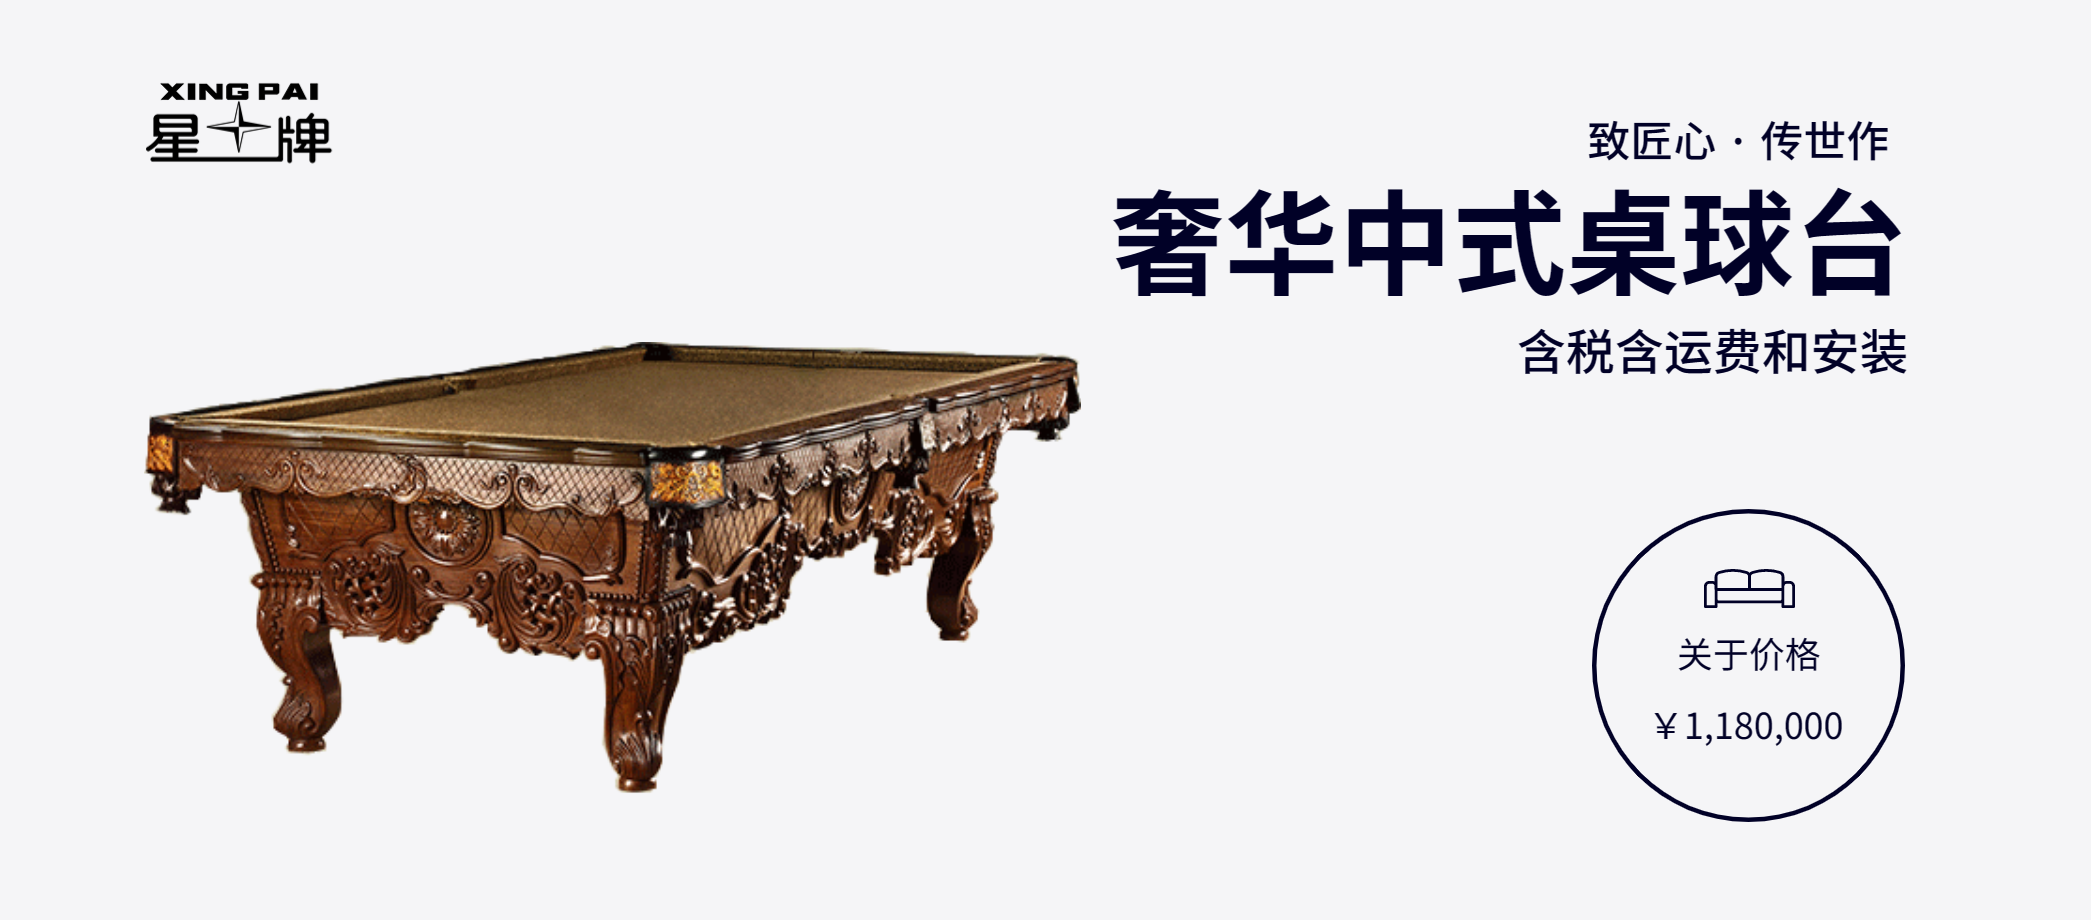 奢华中式台球桌